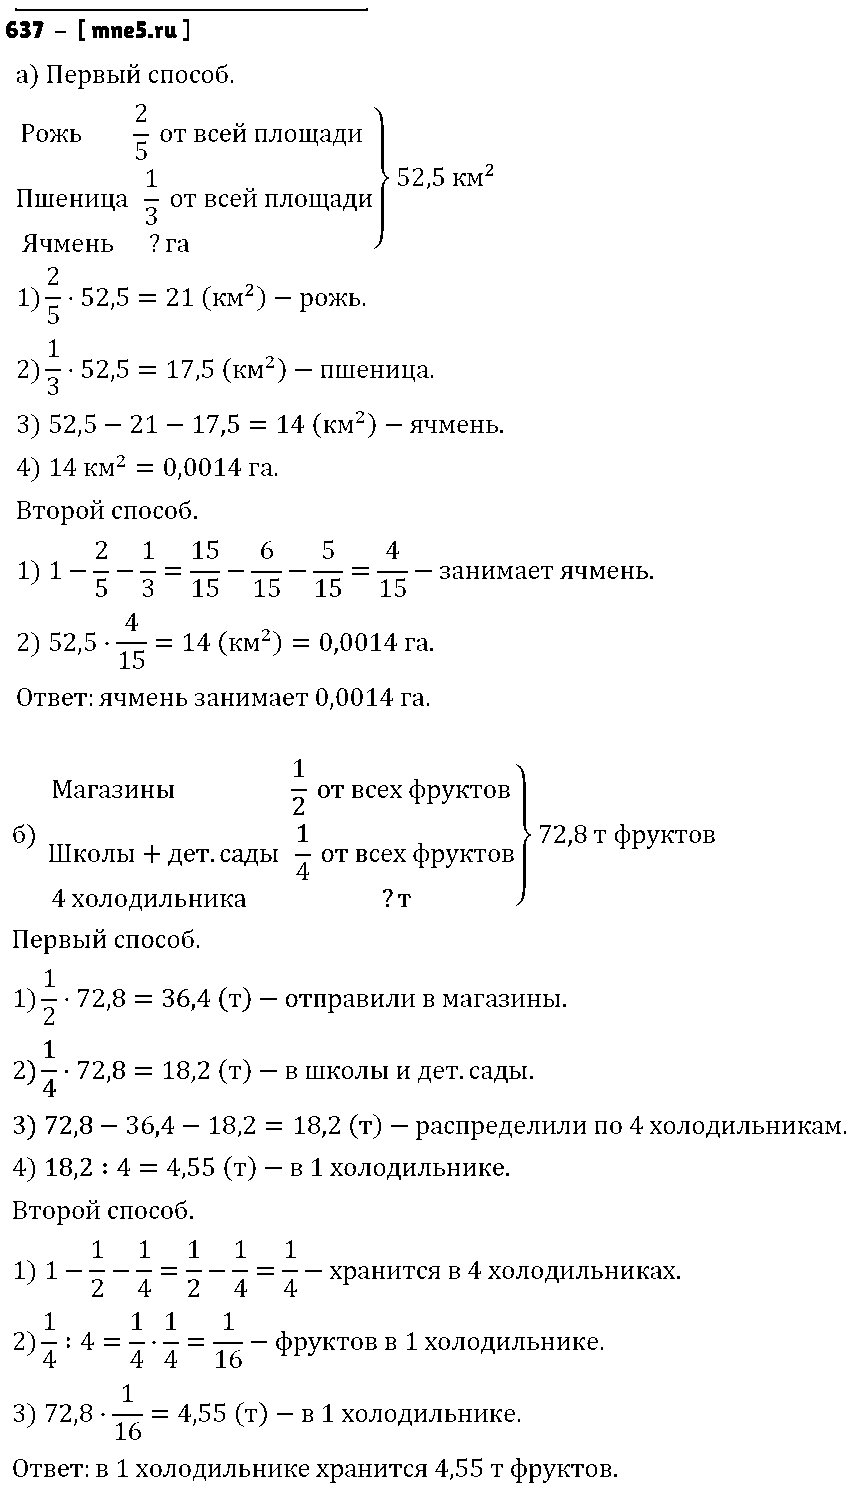 ГДЗ Математика 6 класс - 637